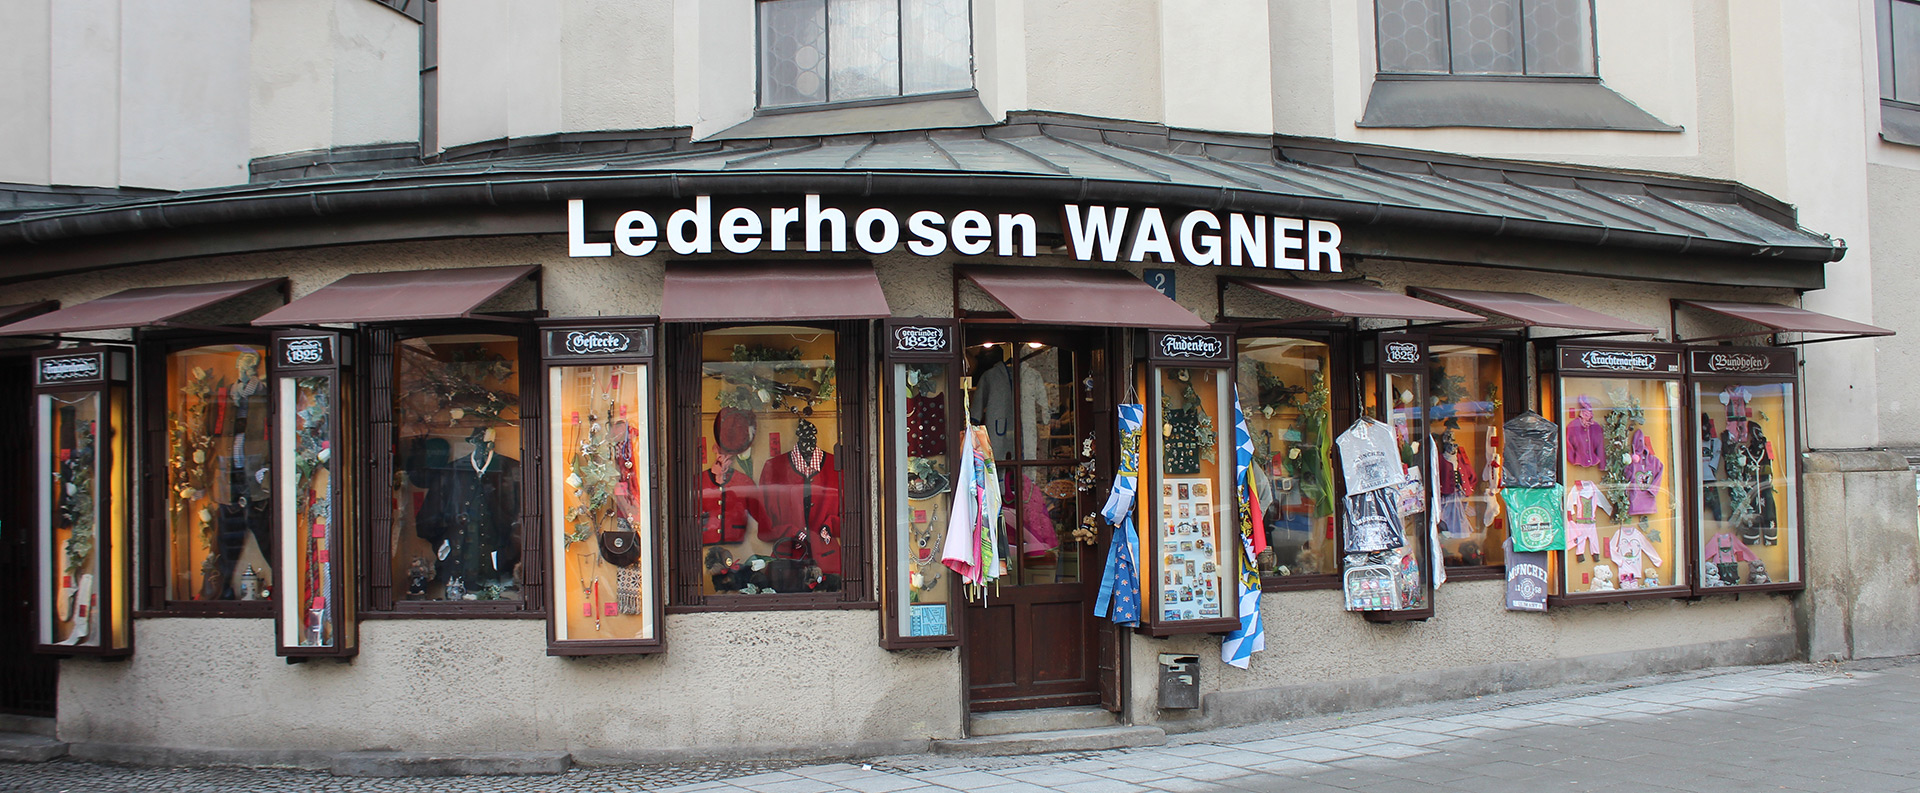 Lederhosen Wagner